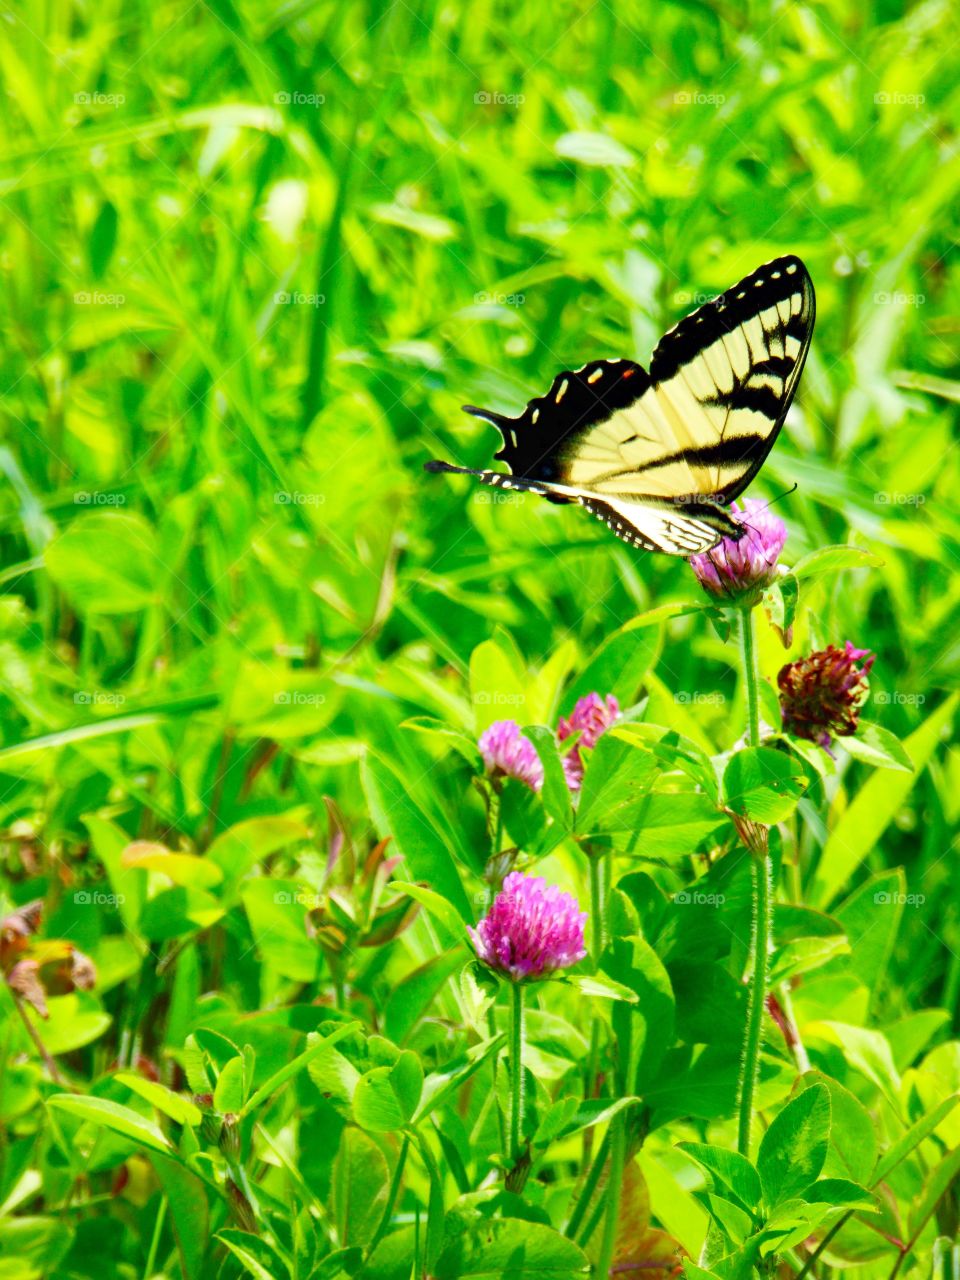 Butterfly in a field 3